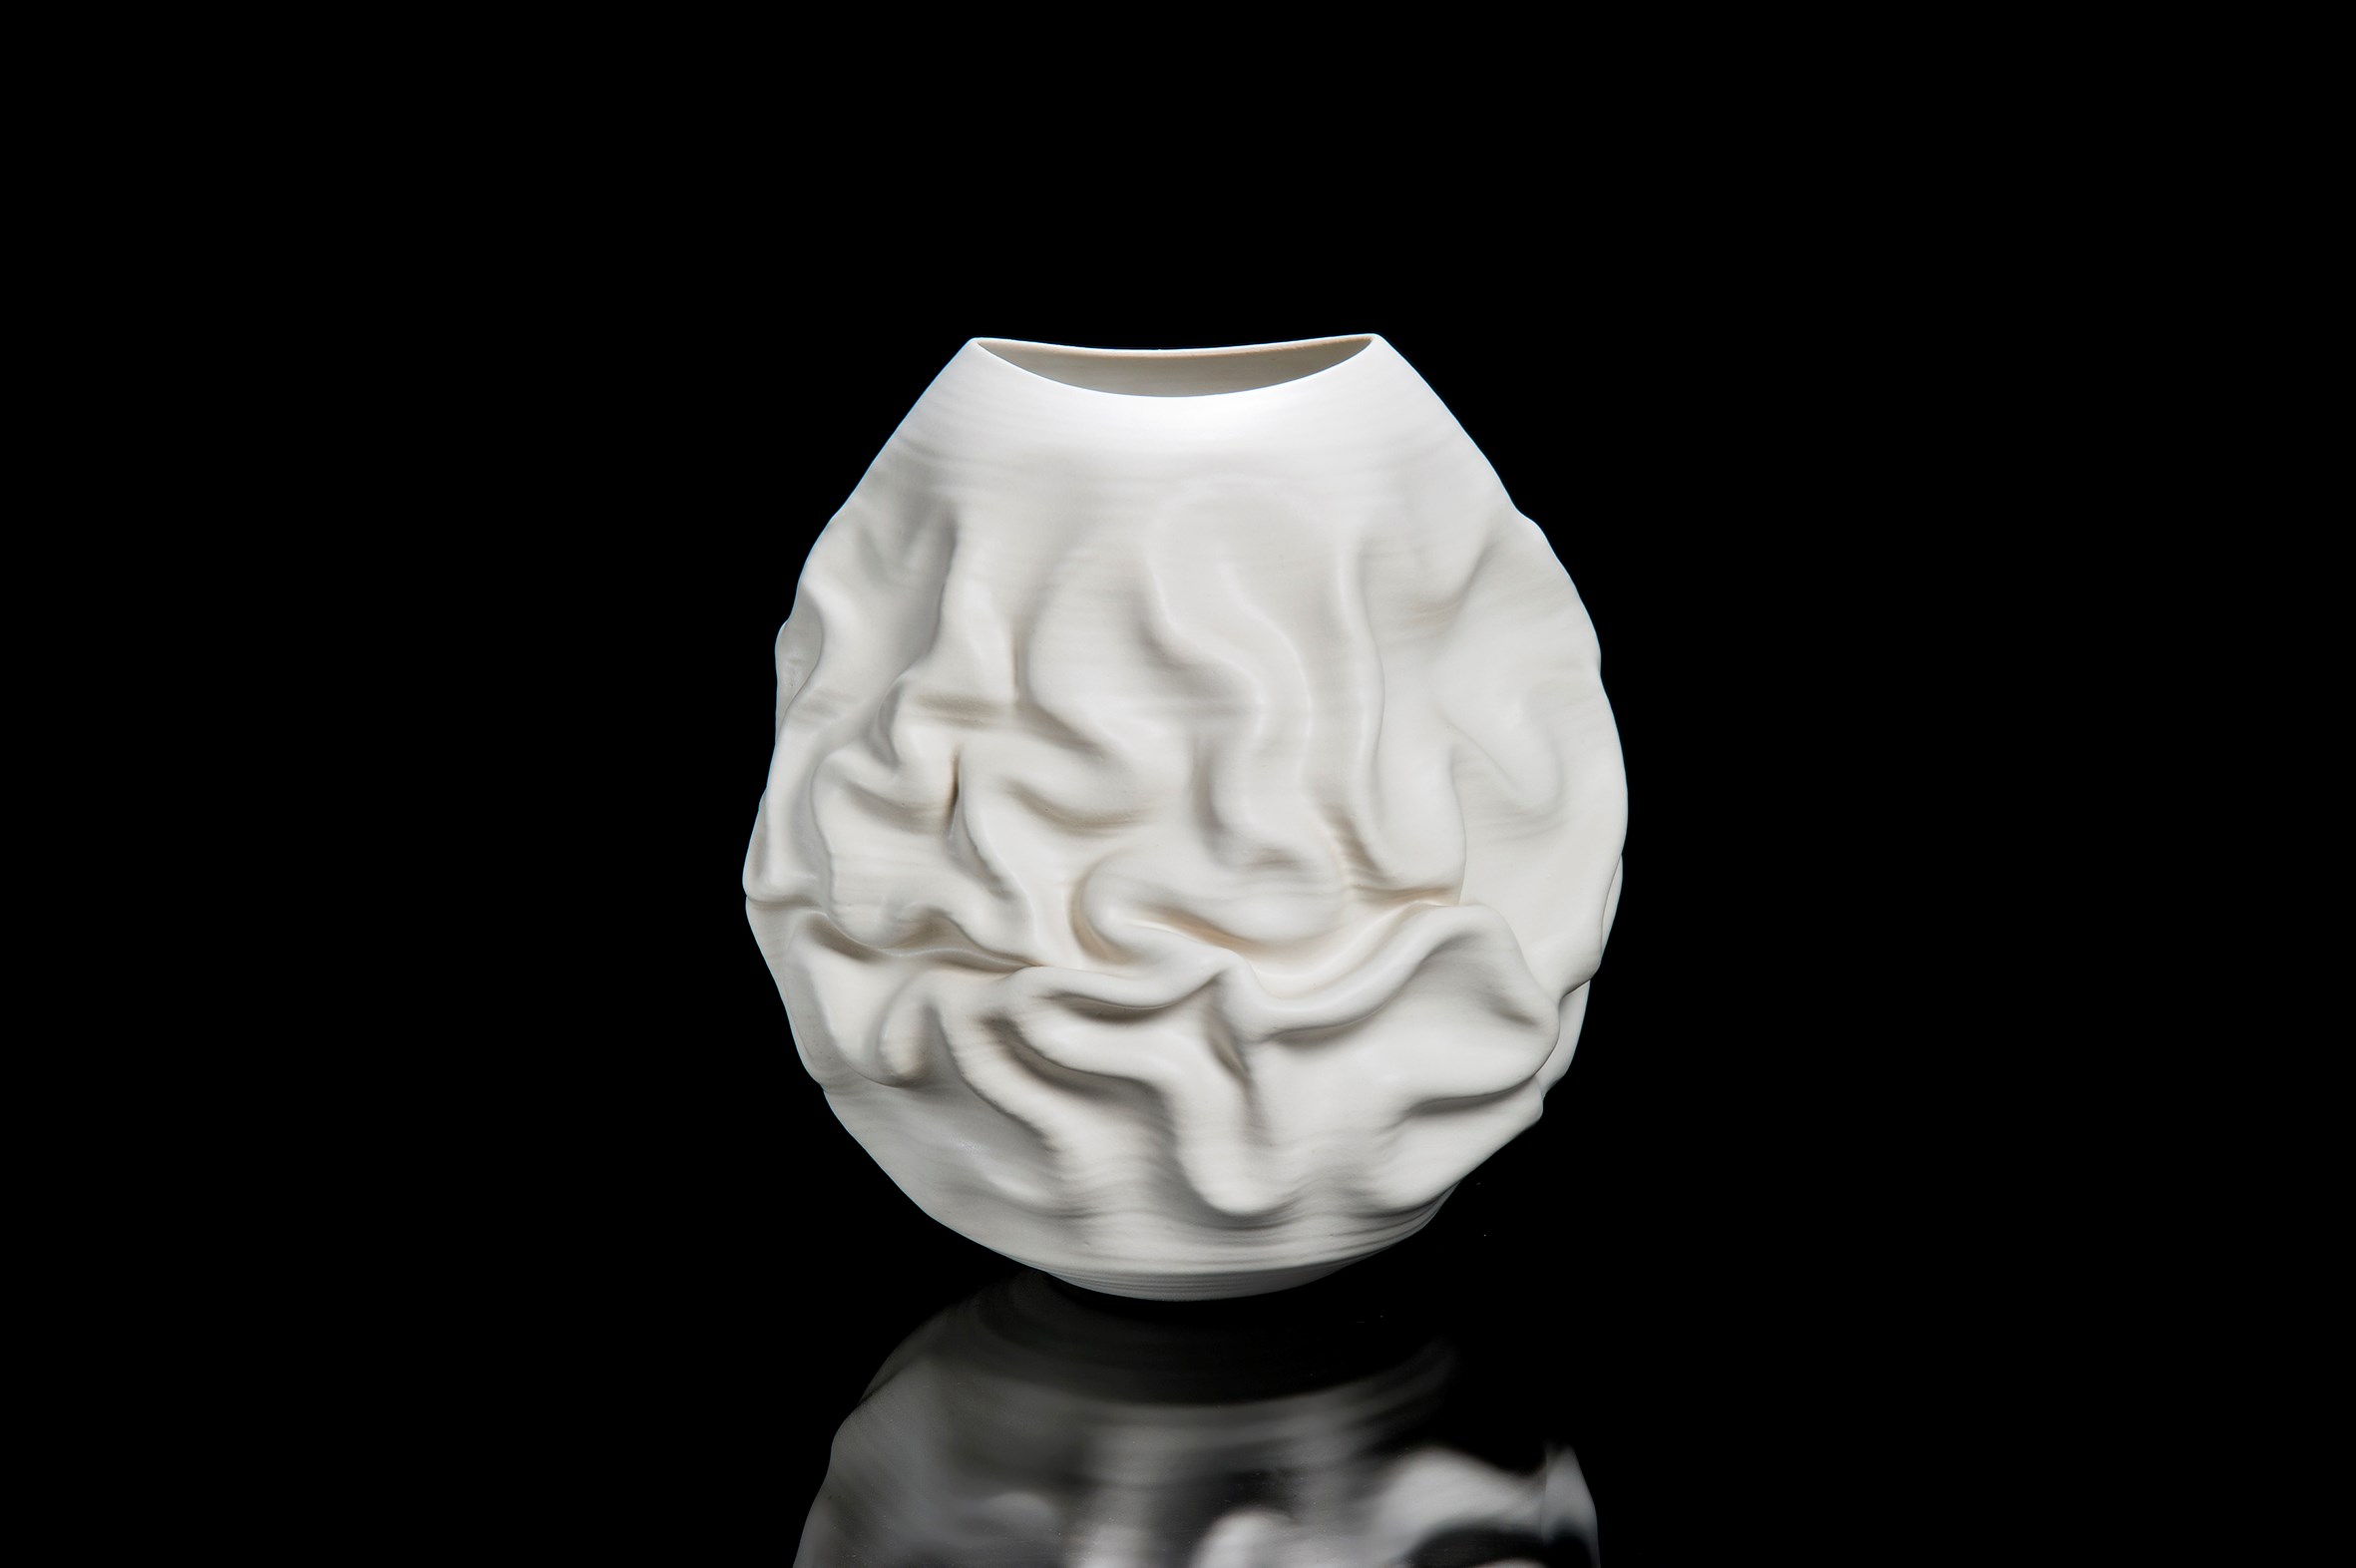 crumpled white ceramic vase art sculpture Nicholas Arroyave-Portela